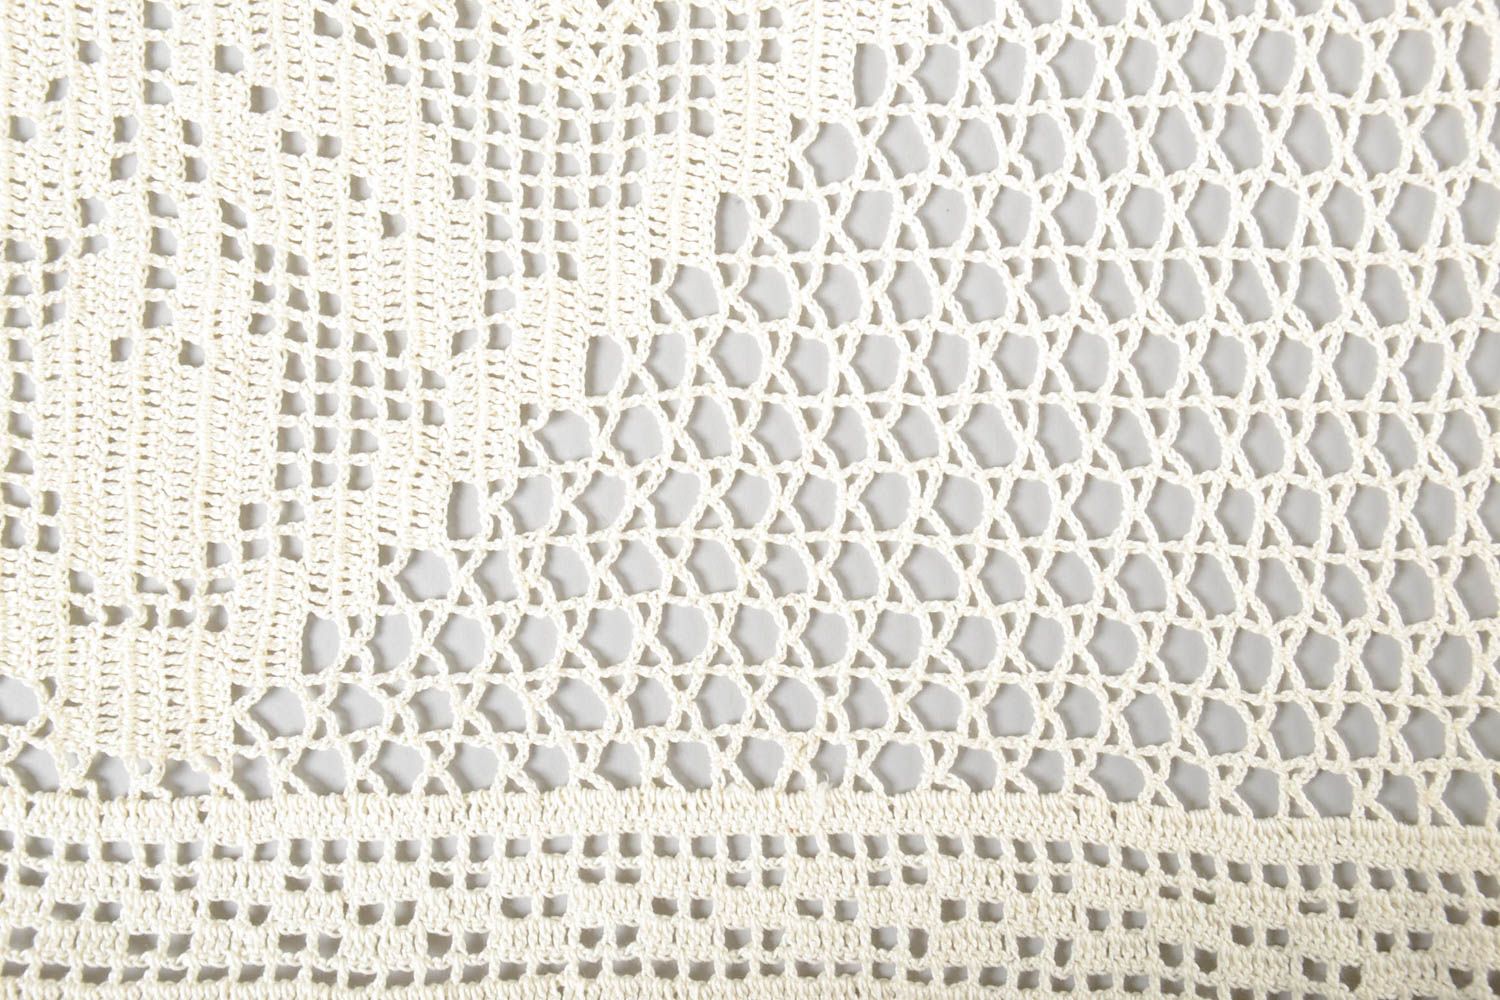 Handmade crocheted tablecloth unique designer textile kitchen interior decor photo 2